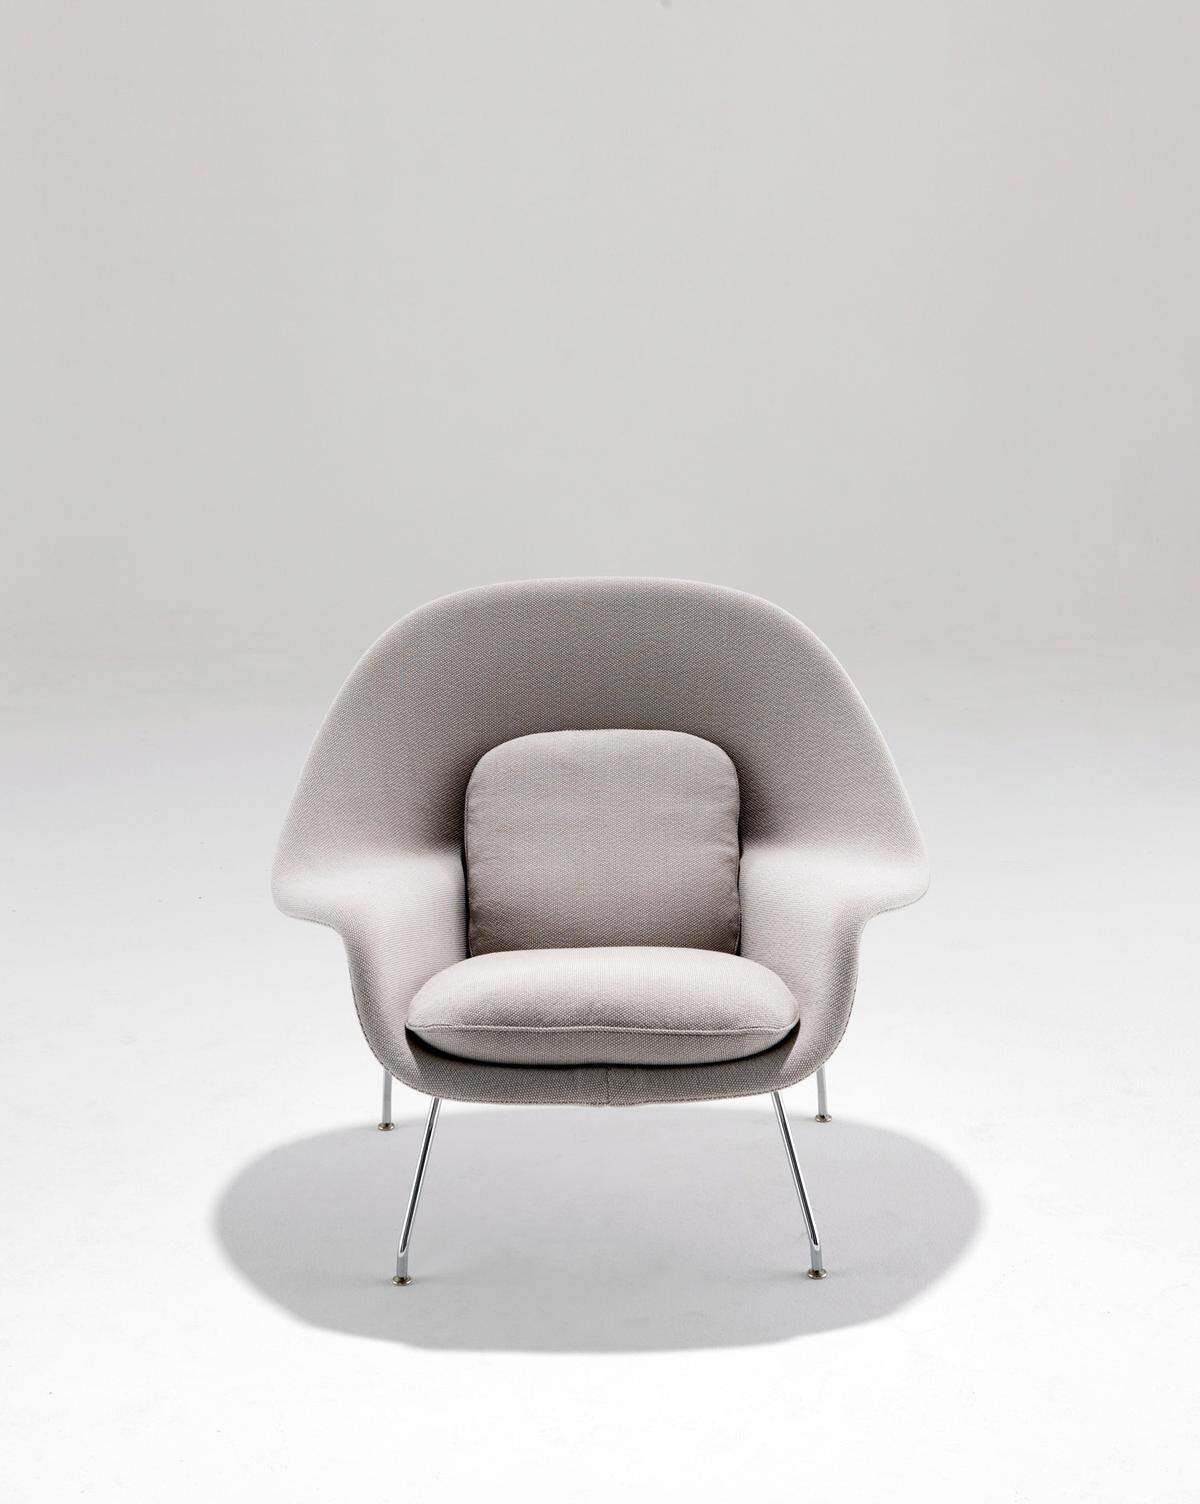 Klassiker. Der Sessel "Womb" von Eero Saarinen, entworfen 1946.